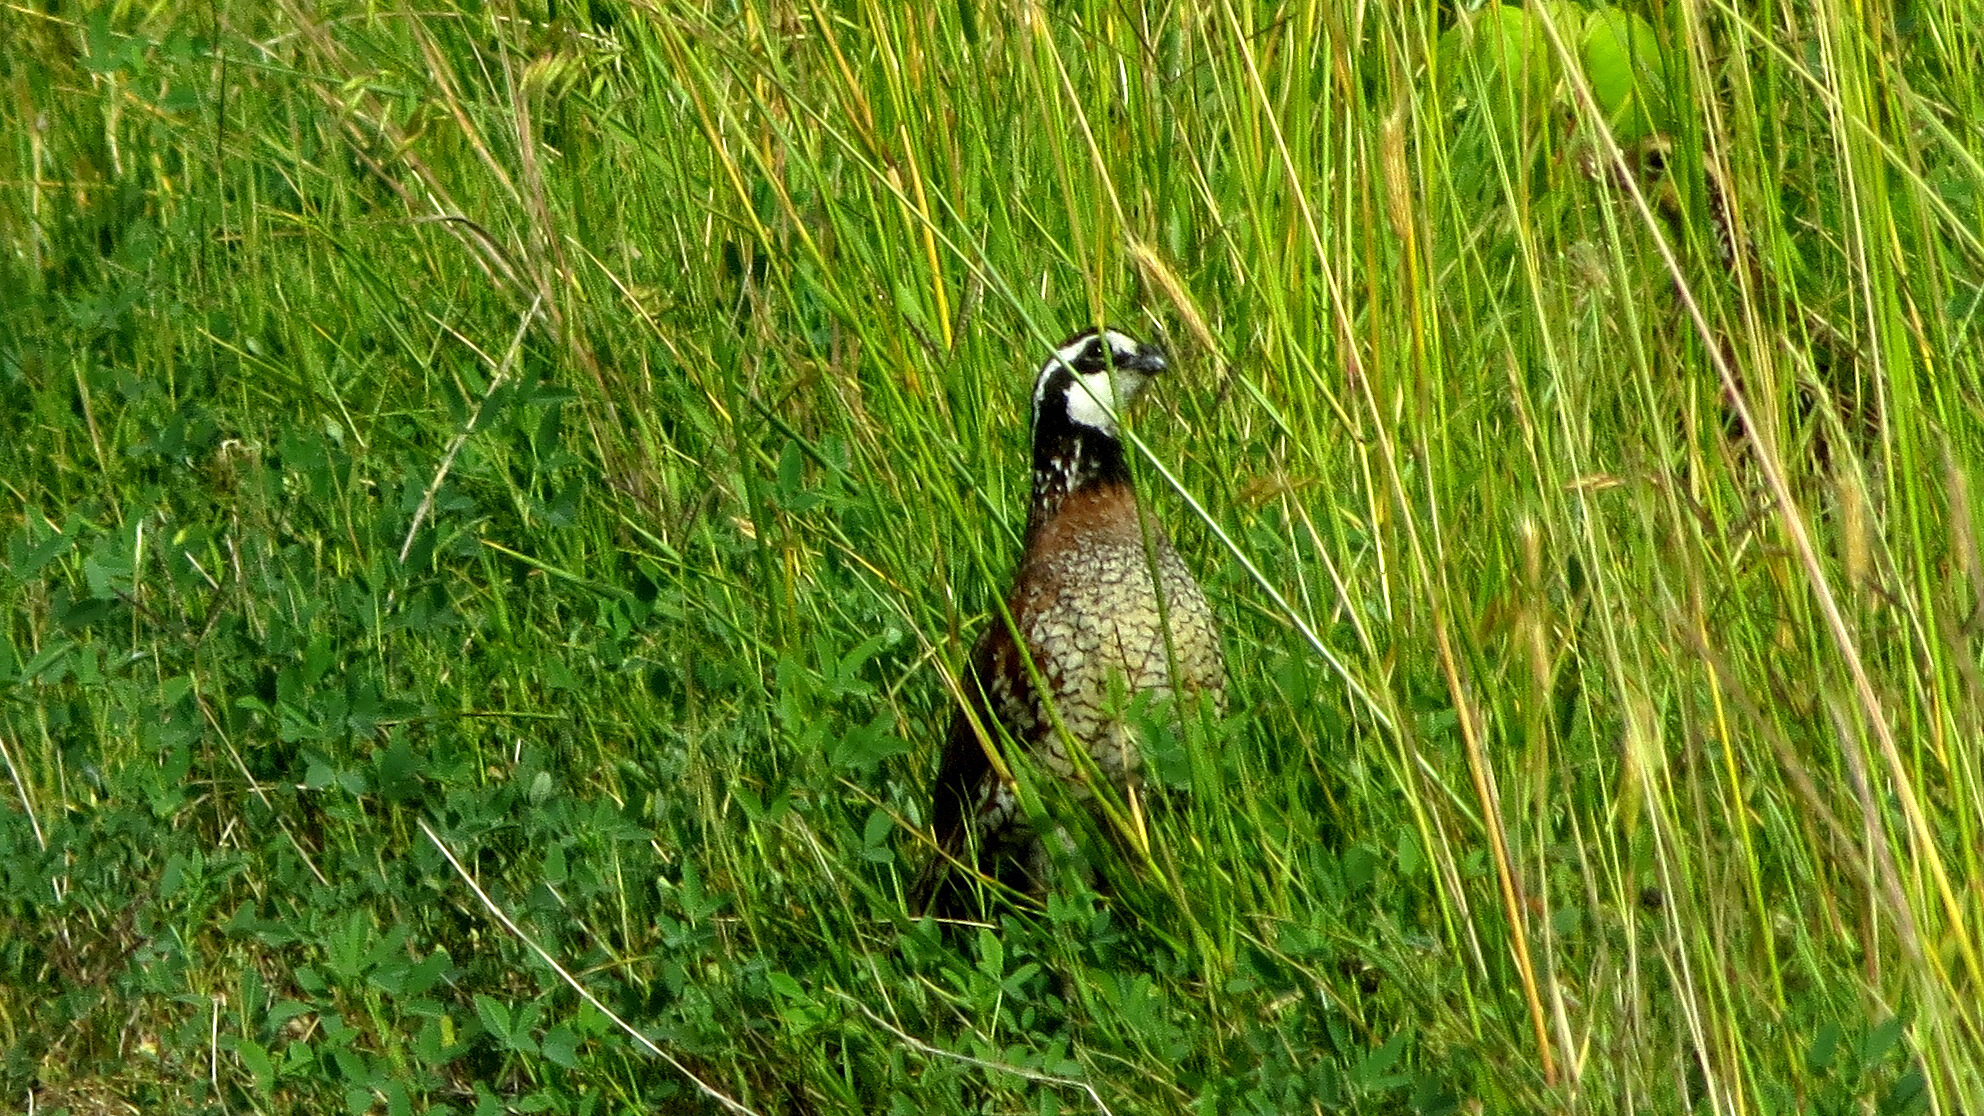 A northern bobwhite quail in the grass